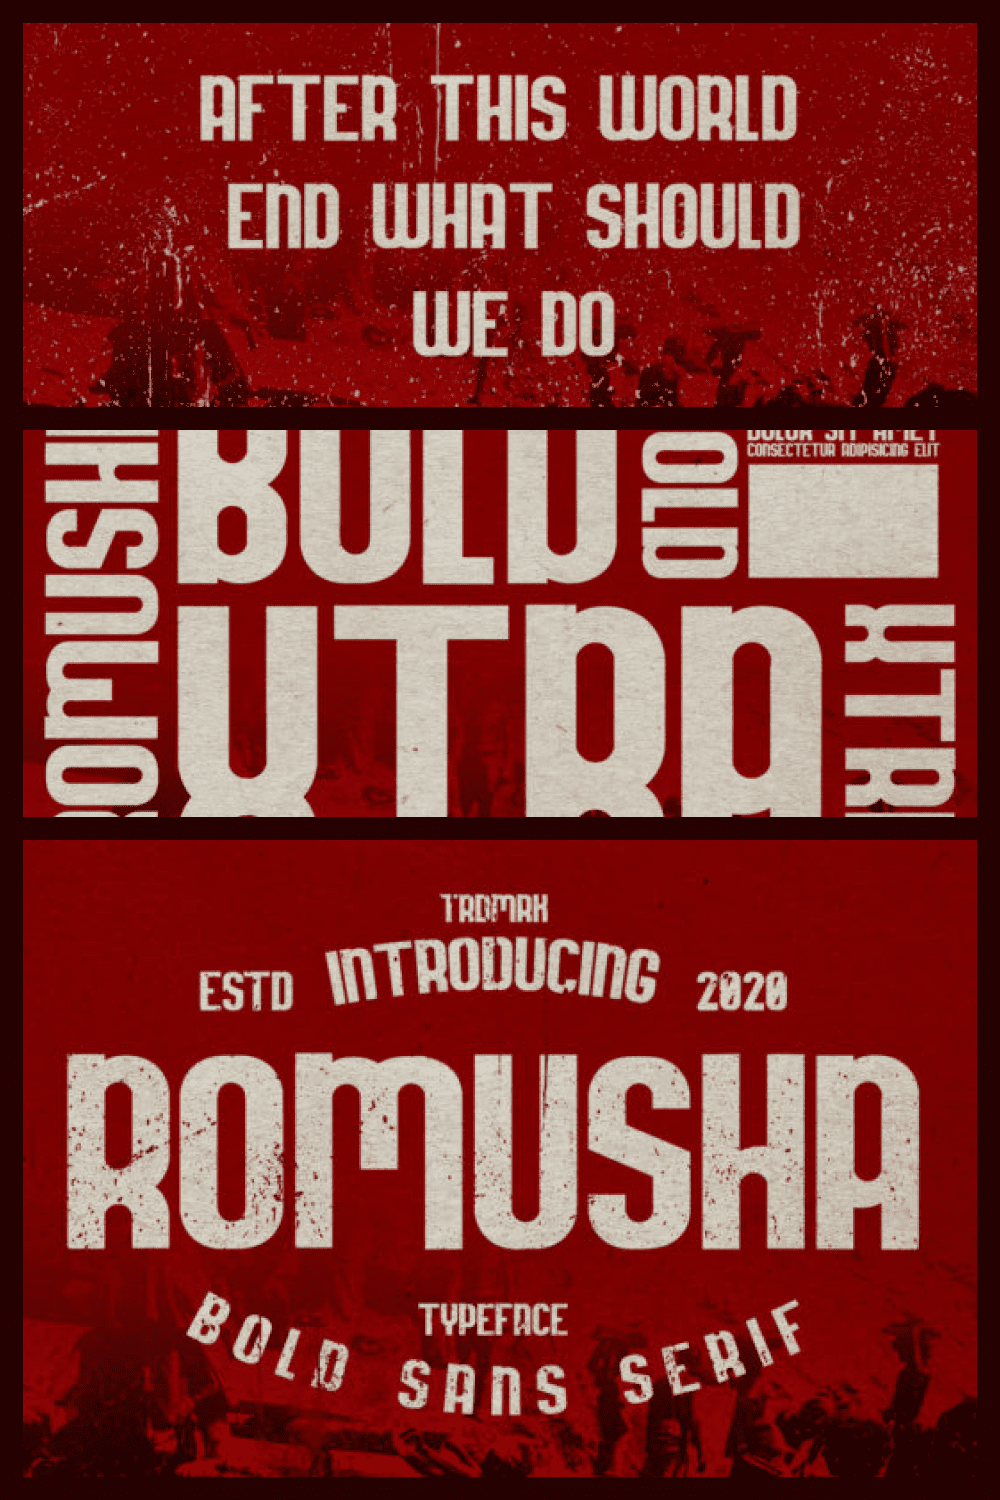 Romusha Bold Font - MasterBundles - Pinterest Collage Image.